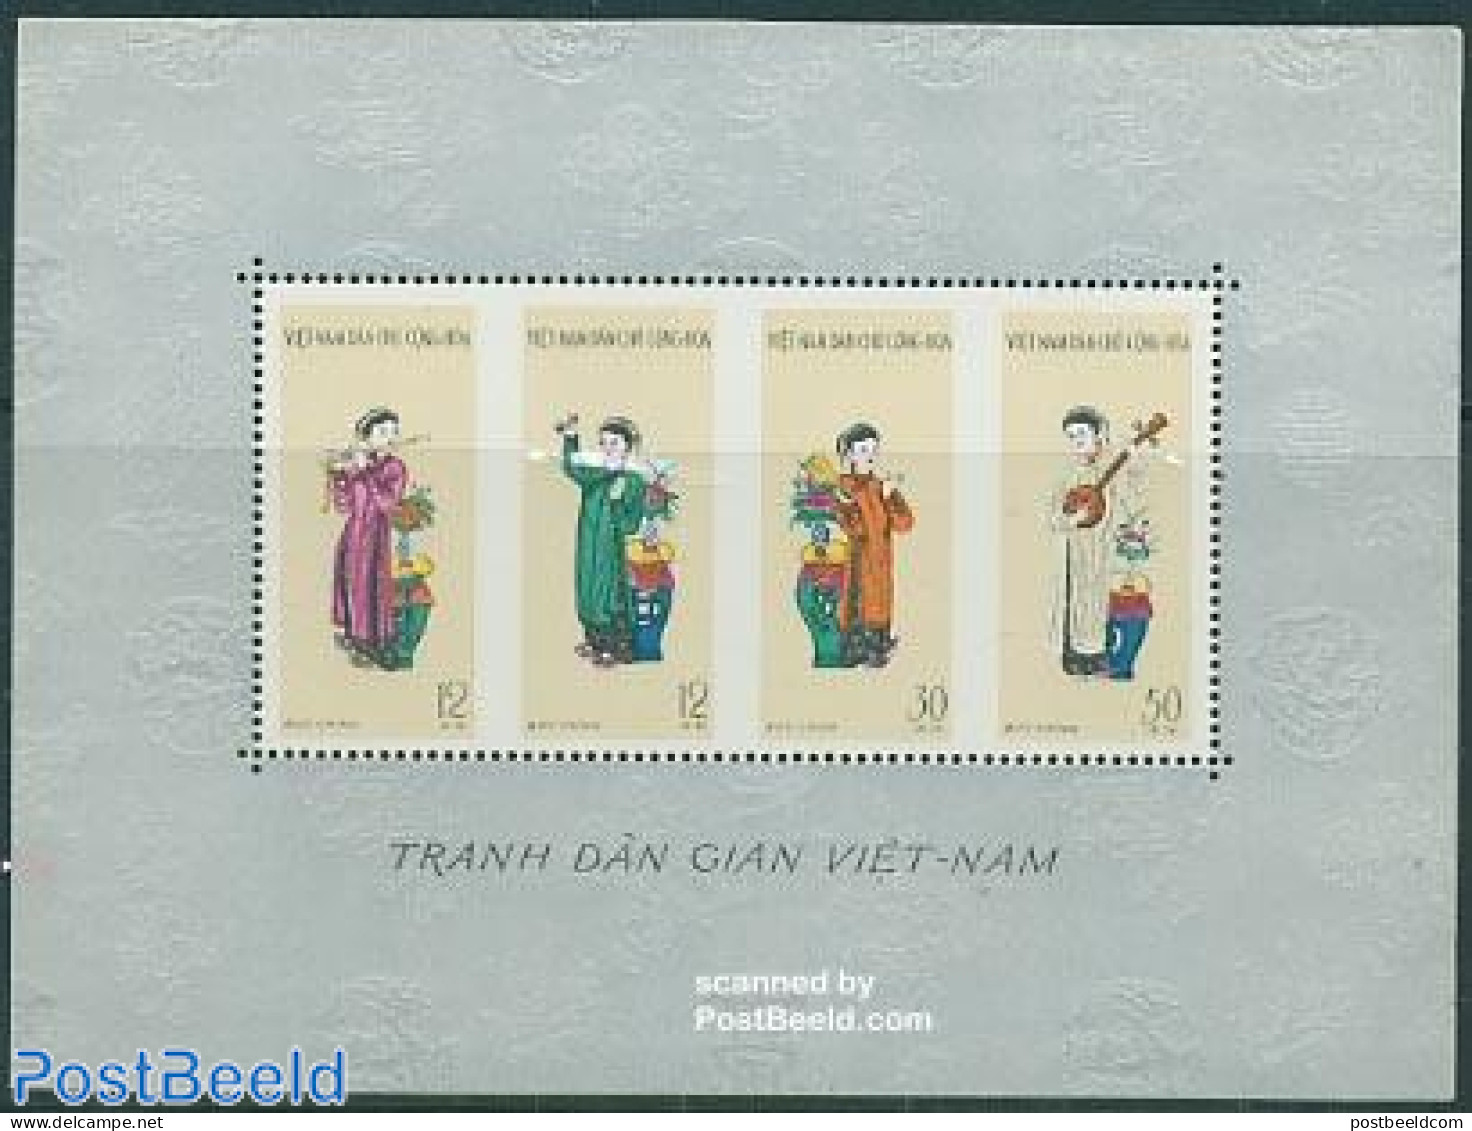 Vietnam 1961 Music & Dance S/s, Mint NH, Performance Art - Music - Musique